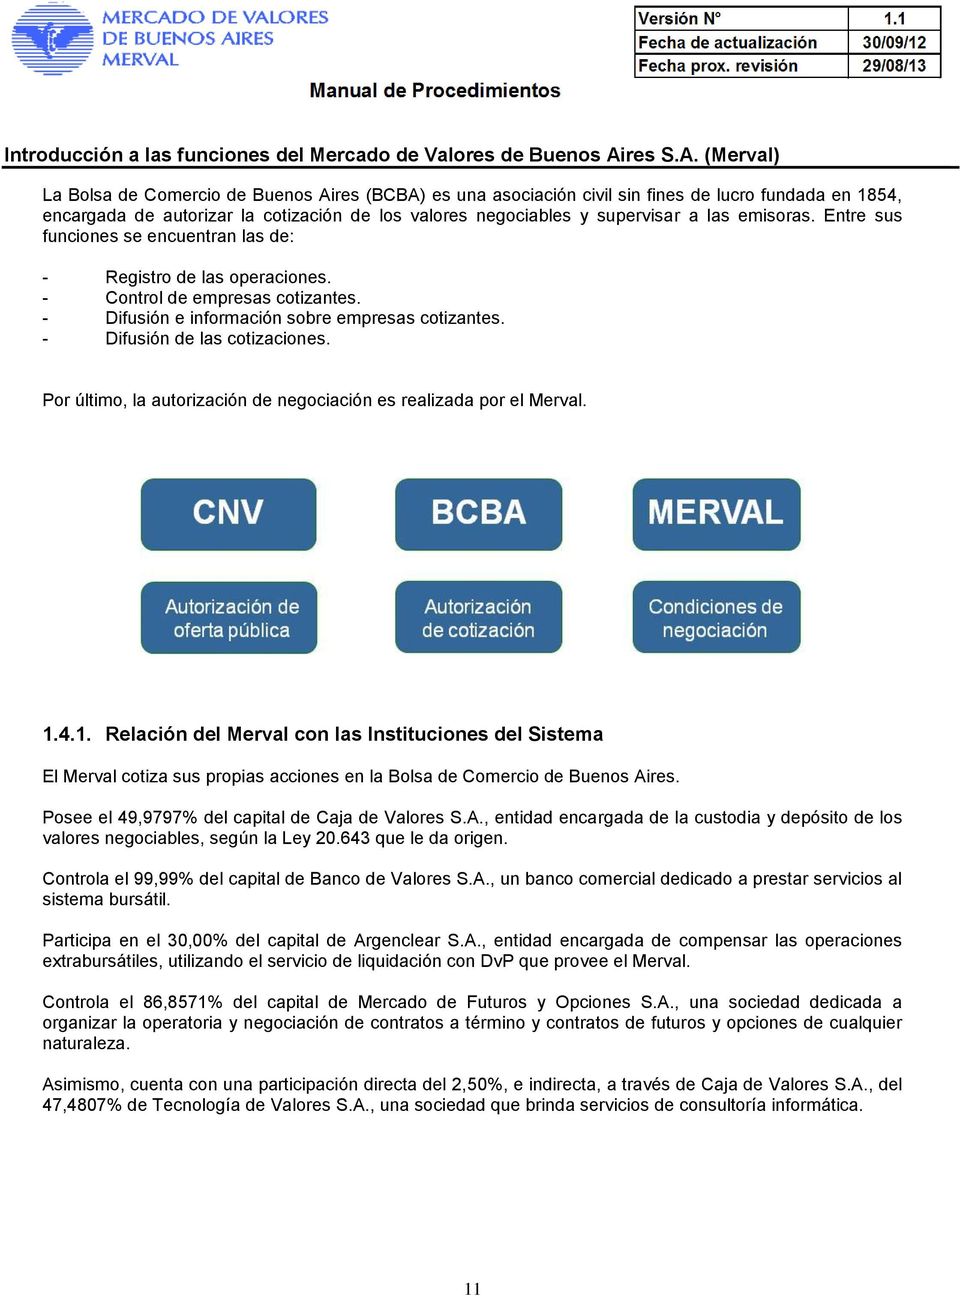 (Merval) r La Bolsa de Comercio de Buenos Aires (BCBA) es una asociación civil sin fines de lucro fundada en 1854, encargada de autorizar la cotización de los valores negociables y supervisar a las